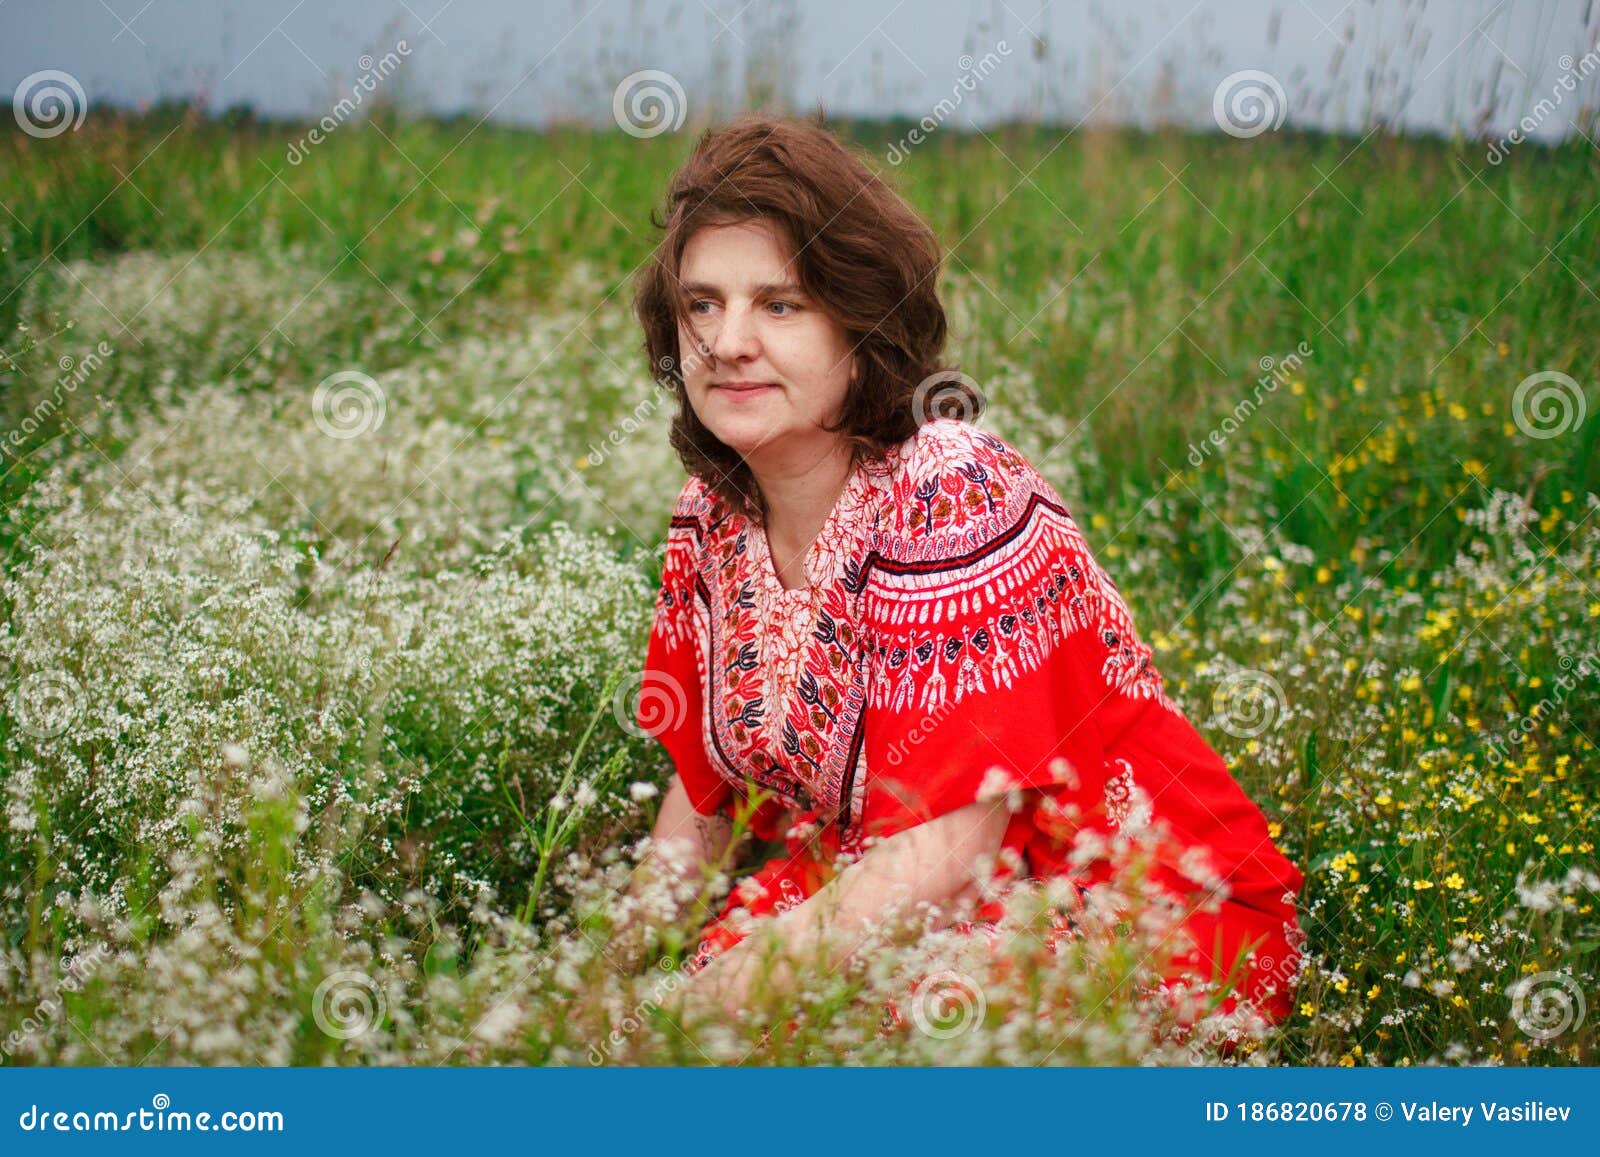 Portrait Smiling Happy Old Elderly Woman Having Fun, Walking in a Field ...